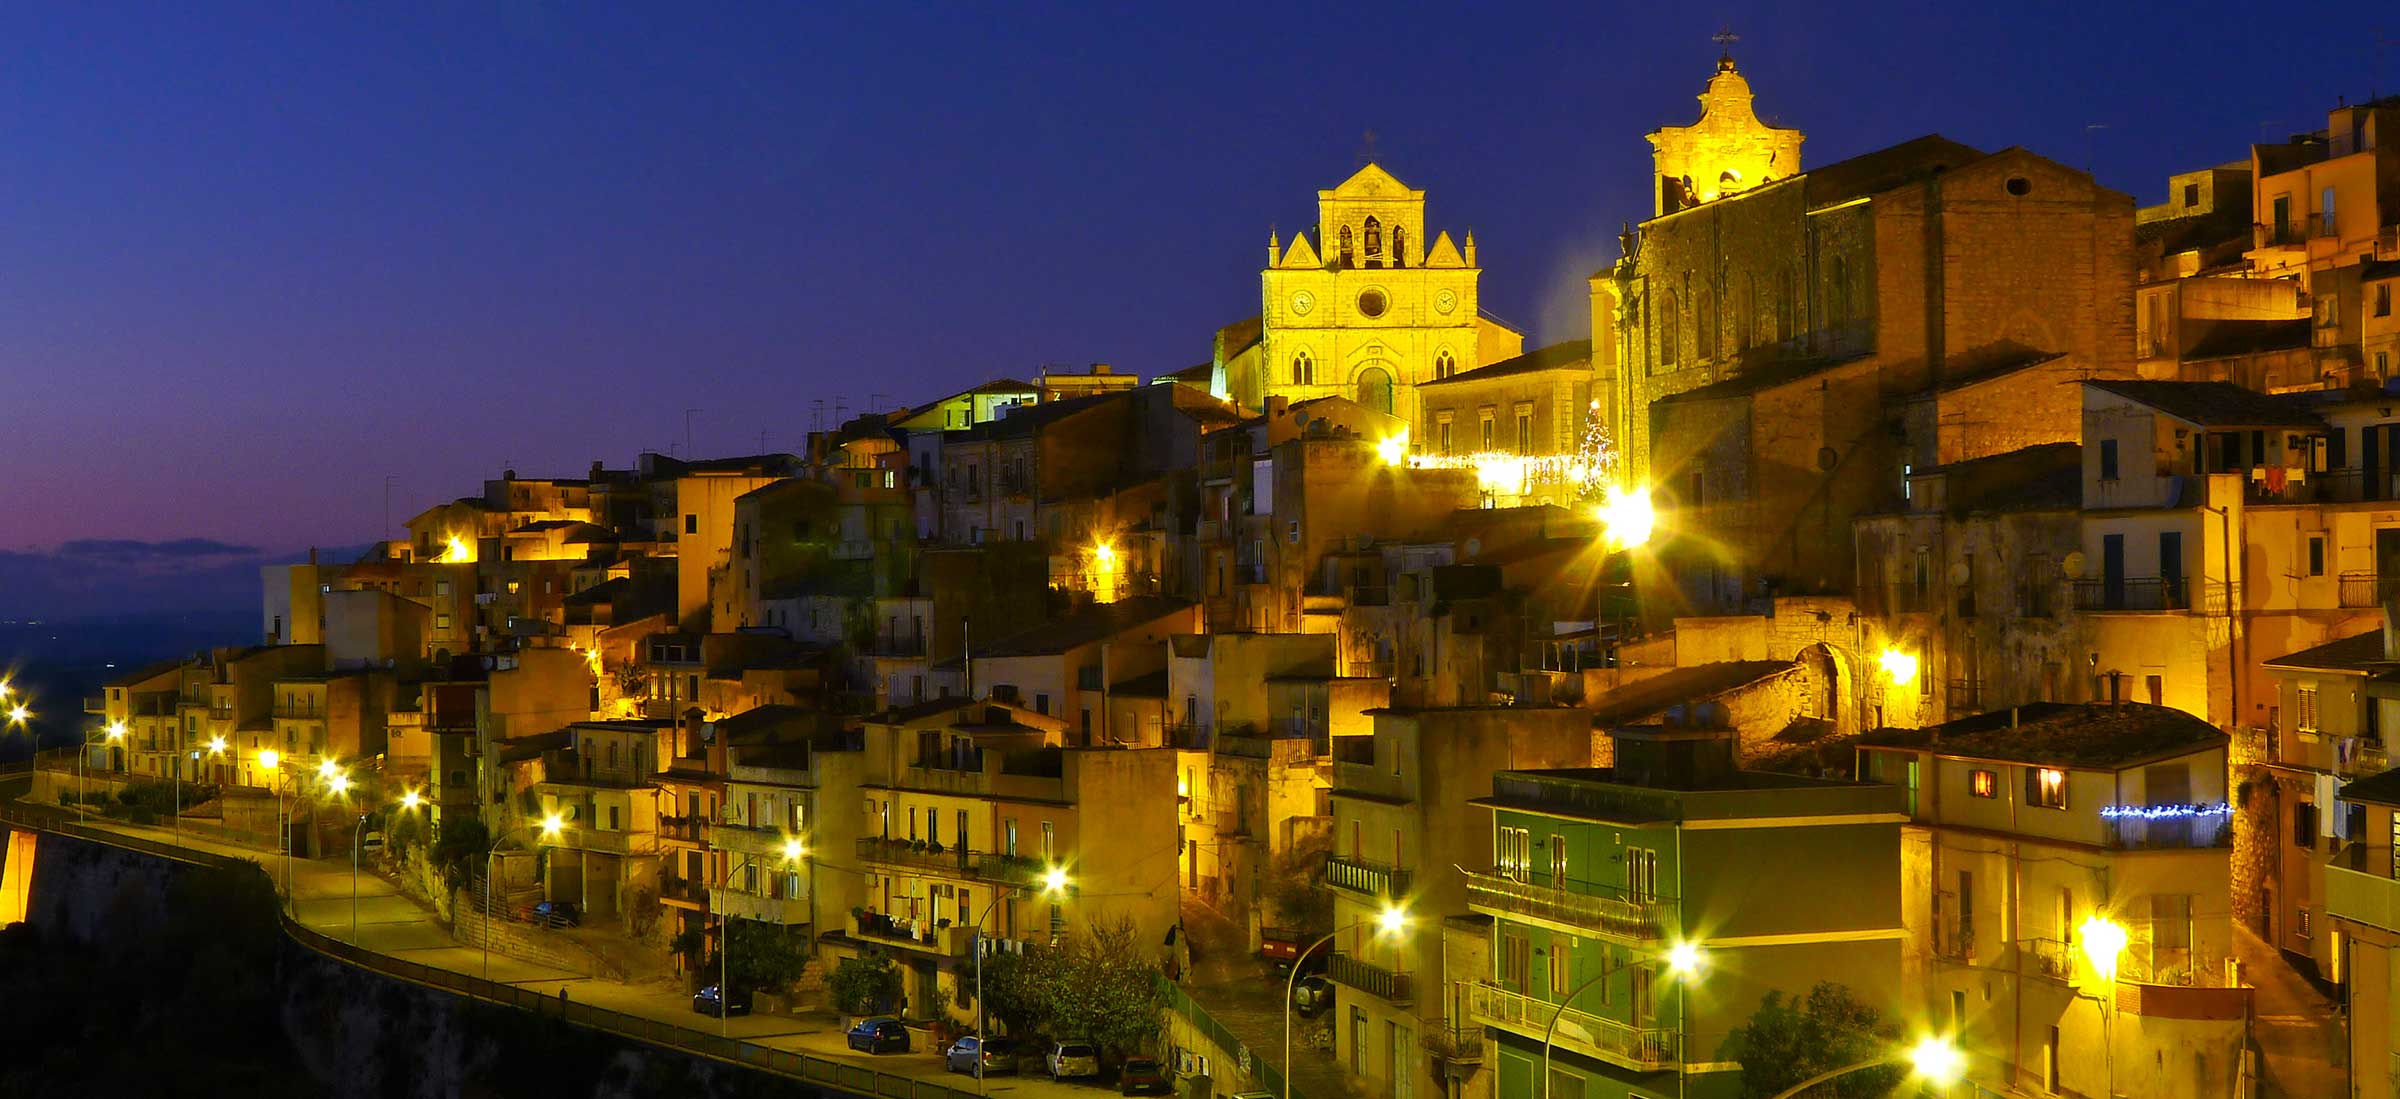 Monterosso Almo at night